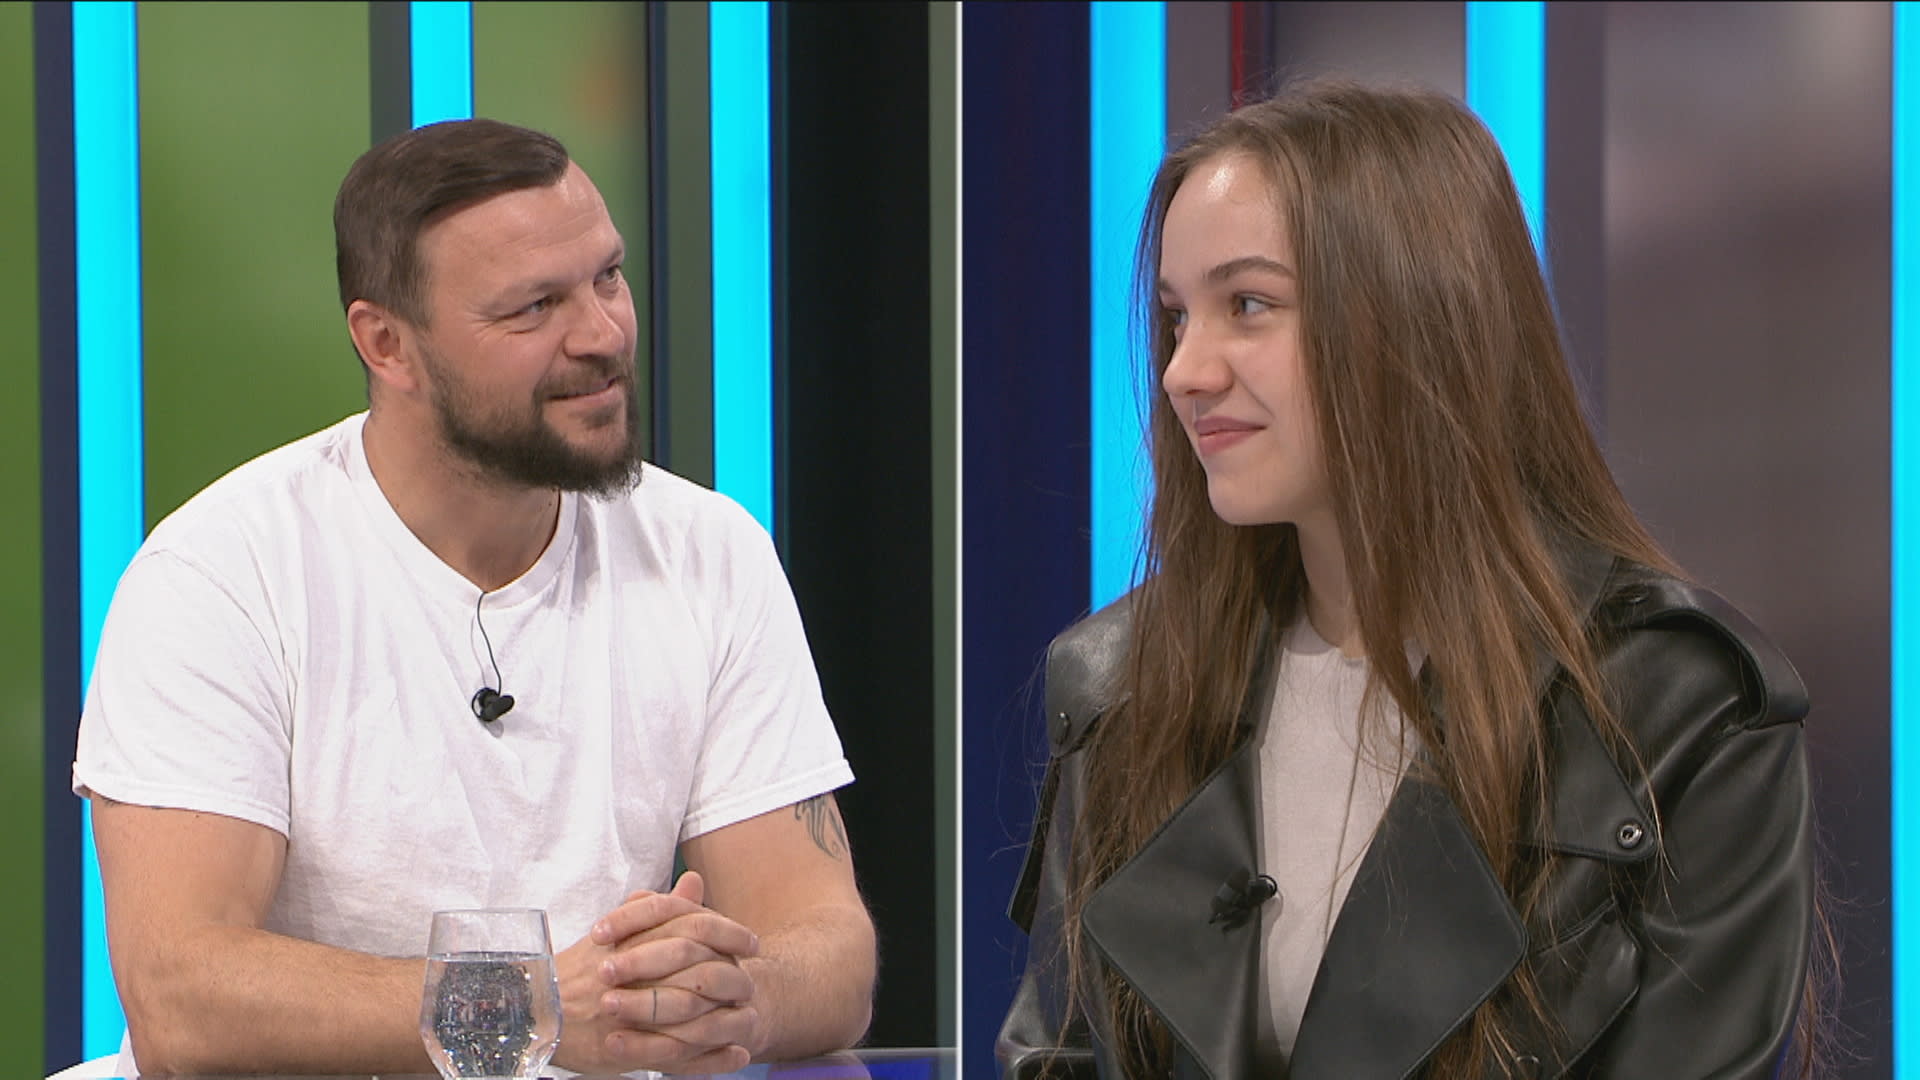 Tomáš Ujfaluši s dcerou Kateřinou byli hosty pořadu Nový den na CNN Prima NEWS.  